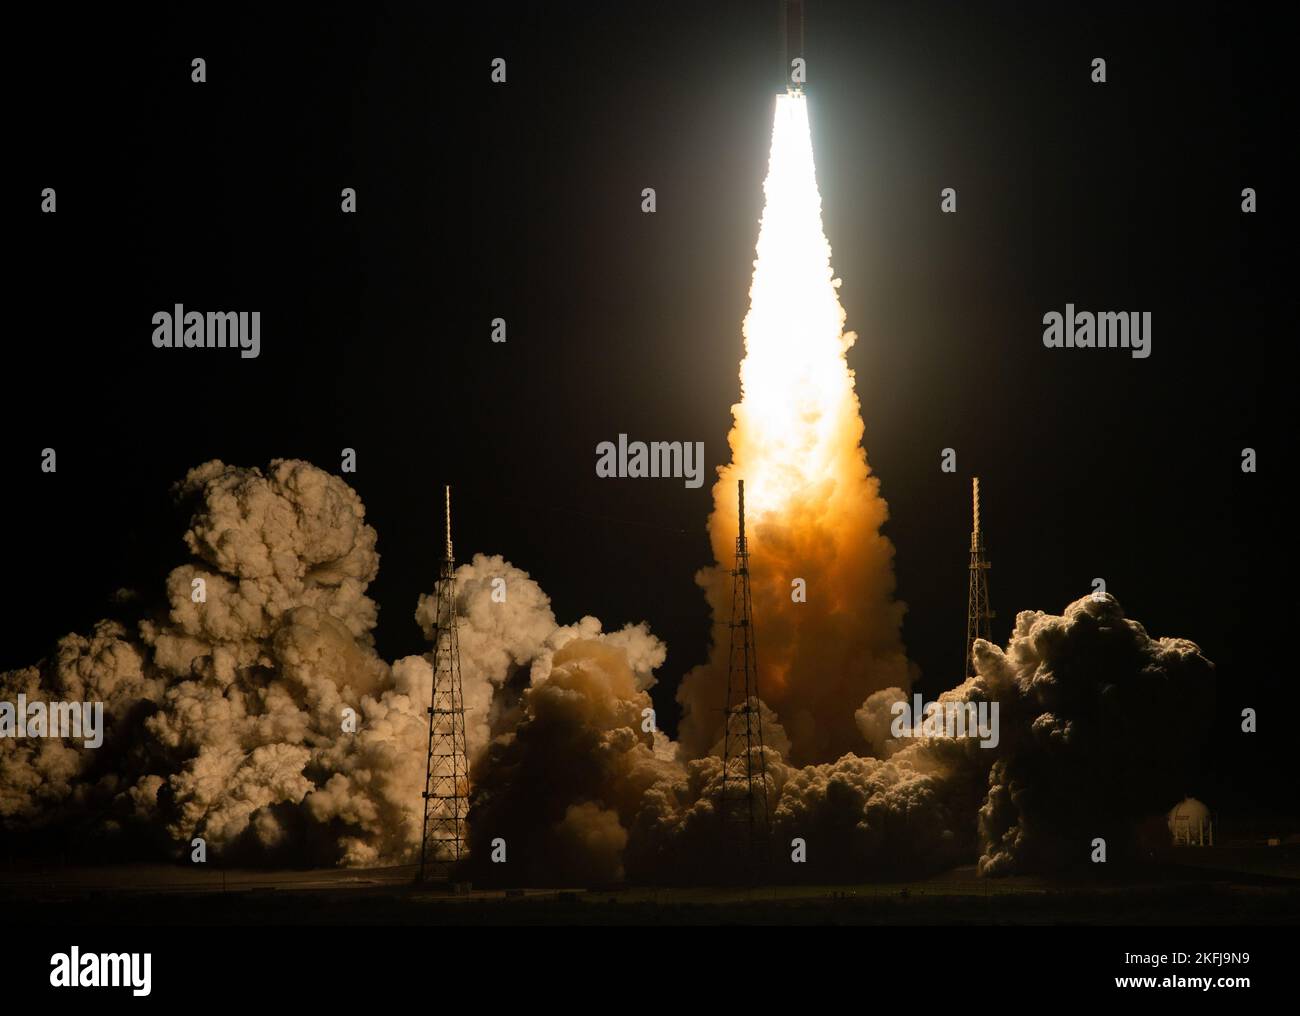 Centro Espacial Kennedy, Estados Unidos de América. 16 de noviembre de 2022. El Sistema de Lanzamiento Espacial Artemis I de la NASA, que lleva la nave espacial Orion, sale de la plataforma de lanzamiento 39B en el Centro Espacial Kennedy, el 16 de noviembre de 2022, en Cabo Cañaveral, Florida. Después de varios intentos fallidos, la prueba de vuelo sin tripulación se levantó en la primera prueba de la misión de exploración del espacio profundo. Crédito: Joel Kowsky/NASA/Alamy Live News Foto de stock